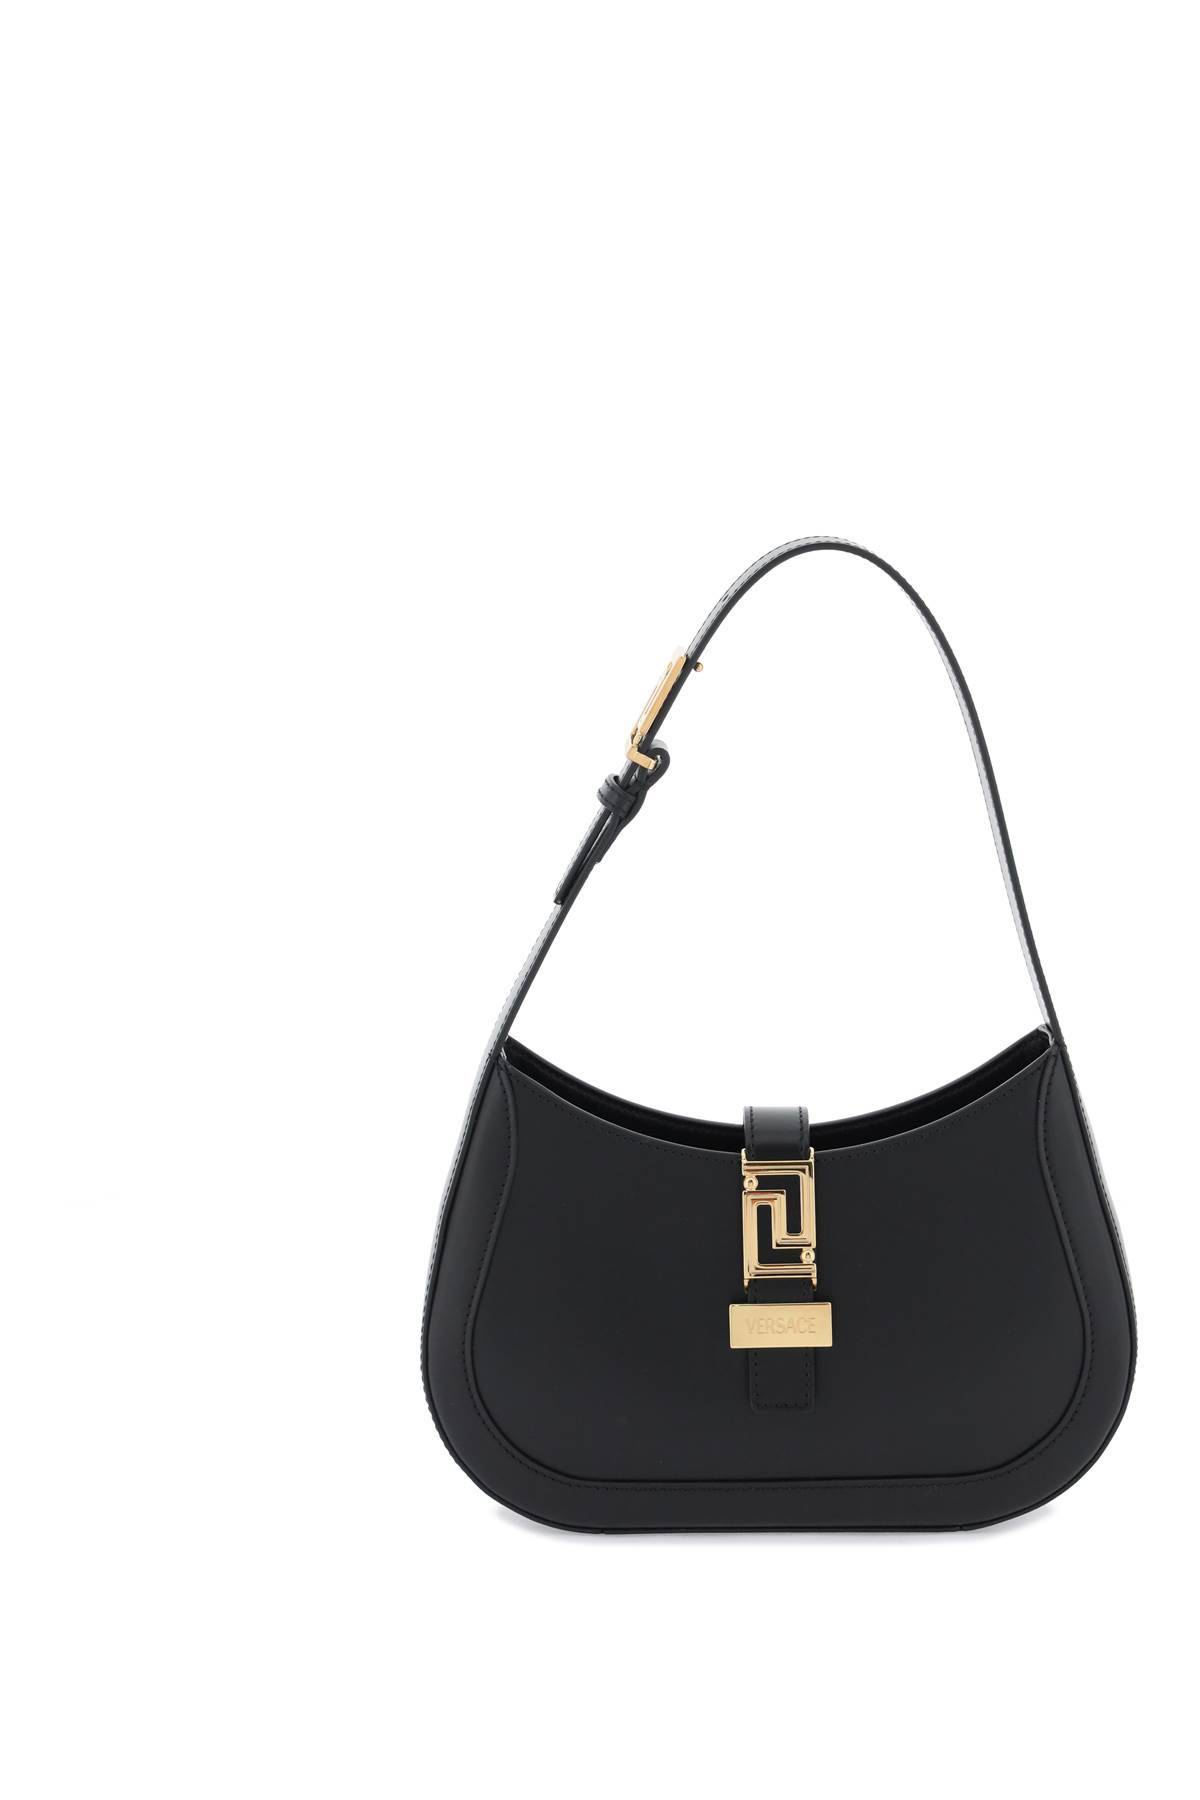 Shop Versace Greca Goddess Small Hobo Bag In Black